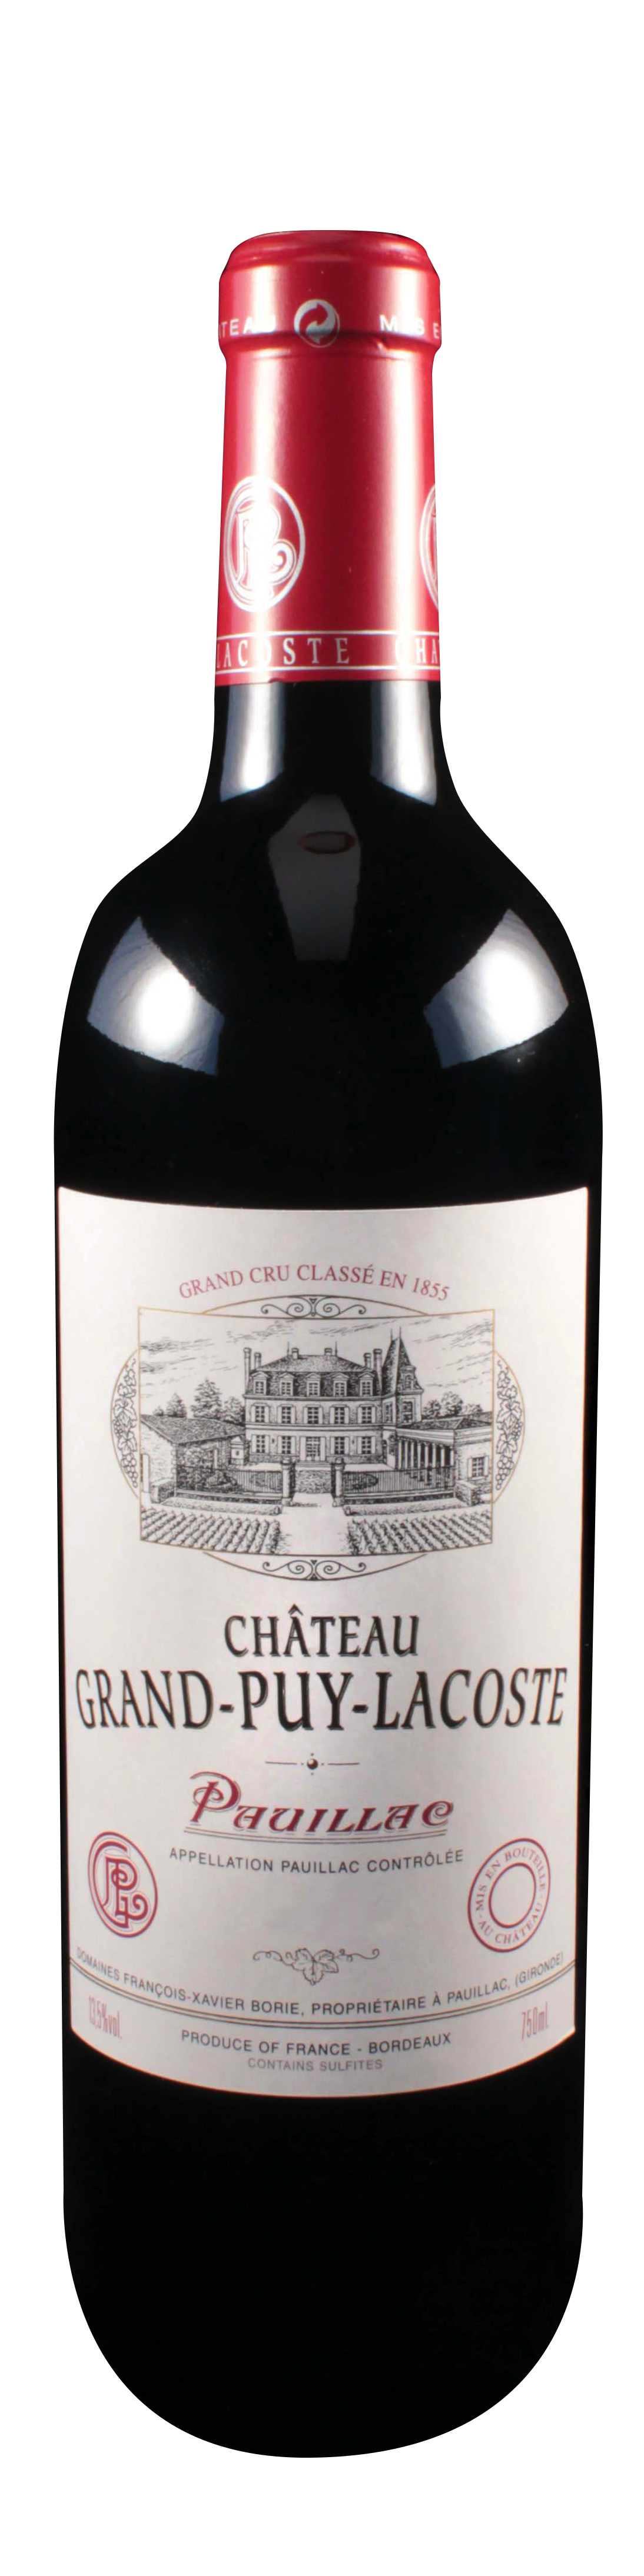 Bottle shot of 2010 Château Grand Puy Lacoste, 5ème Cru Pauillac